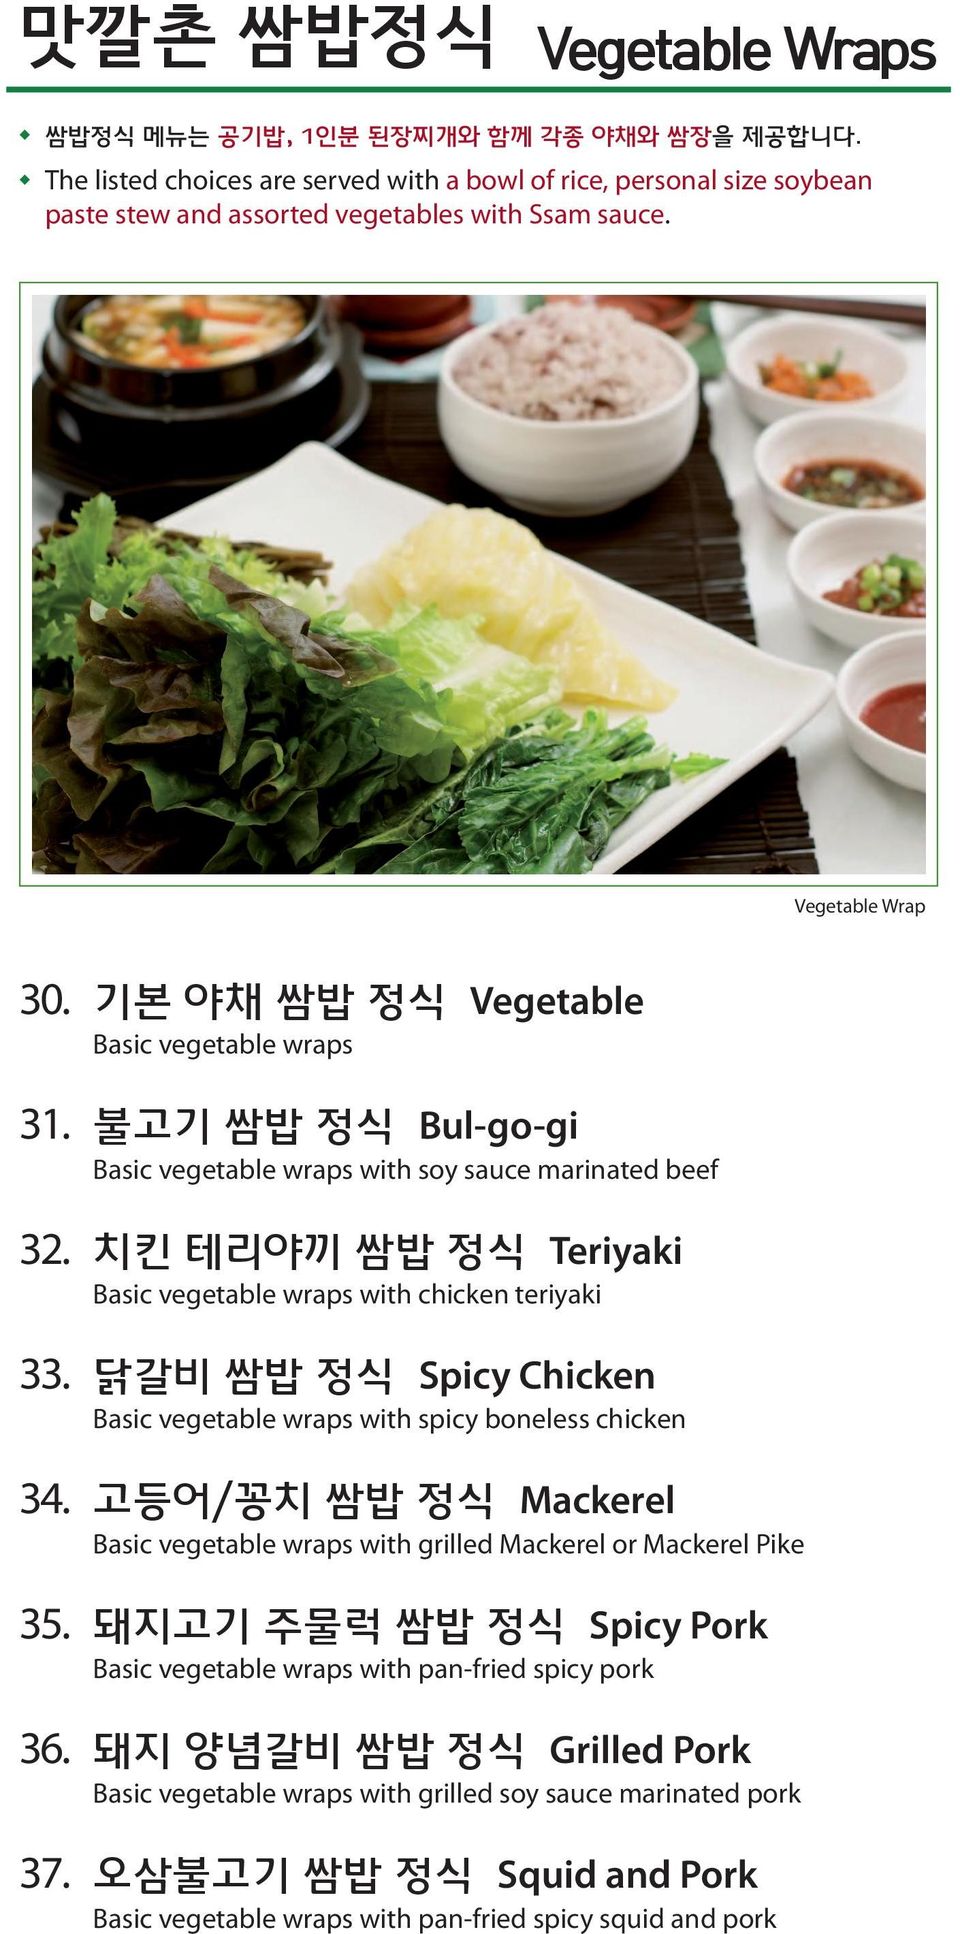 치킨 테리야끼 쌈밥 정식 Teriyaki Basic vegetable wraps with chicken teriyaki 33. 닭갈비 쌈밥 정식 Spicy Chicken Basic vegetable wraps with spicy boneless chicken 34.